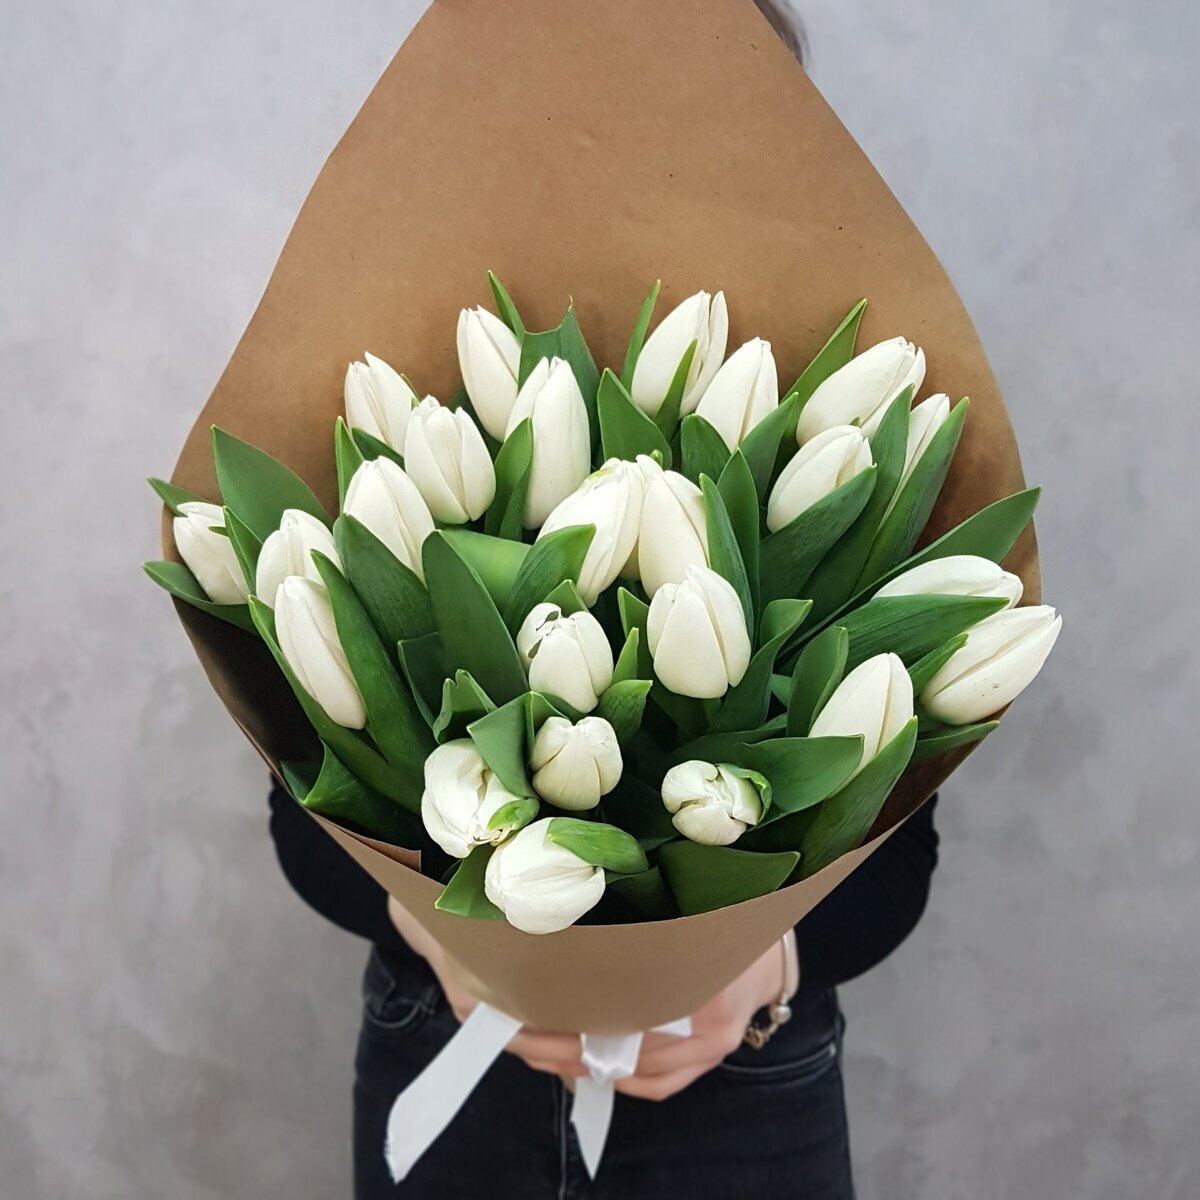 25 Белых тюльпанов